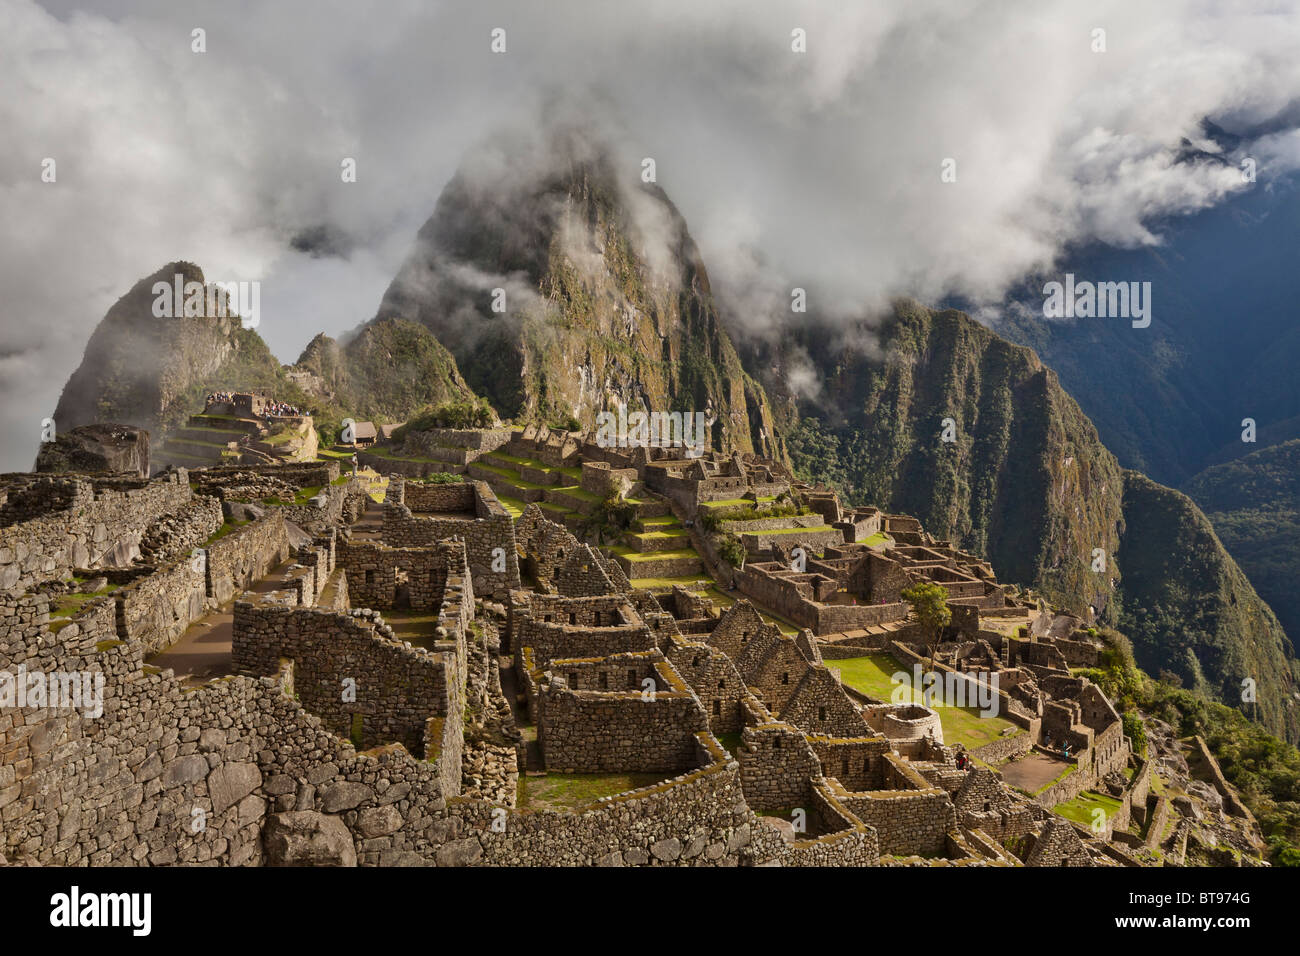 Mattina nebbia e nuvole rivelano il Machu Picchu, l'antica "Città perduta degli Incas", CA 1400, 2400 metri. Foto Stock